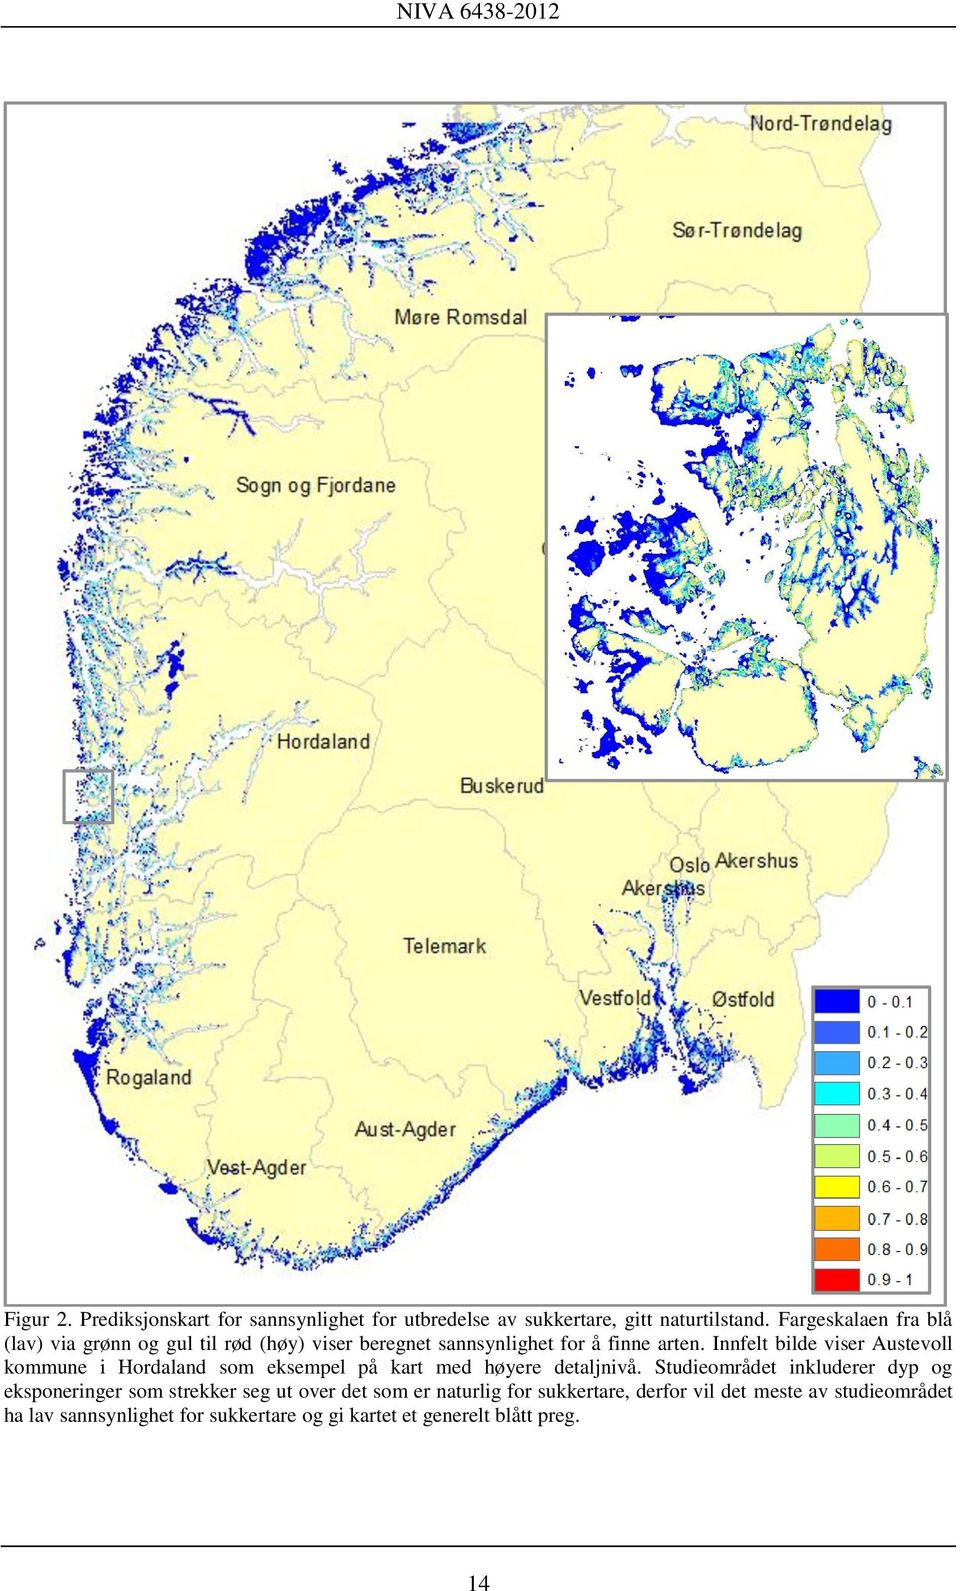 Innfelt bilde viser Austevoll kommune i Hordaland som eksempel på kart med høyere detaljnivå.